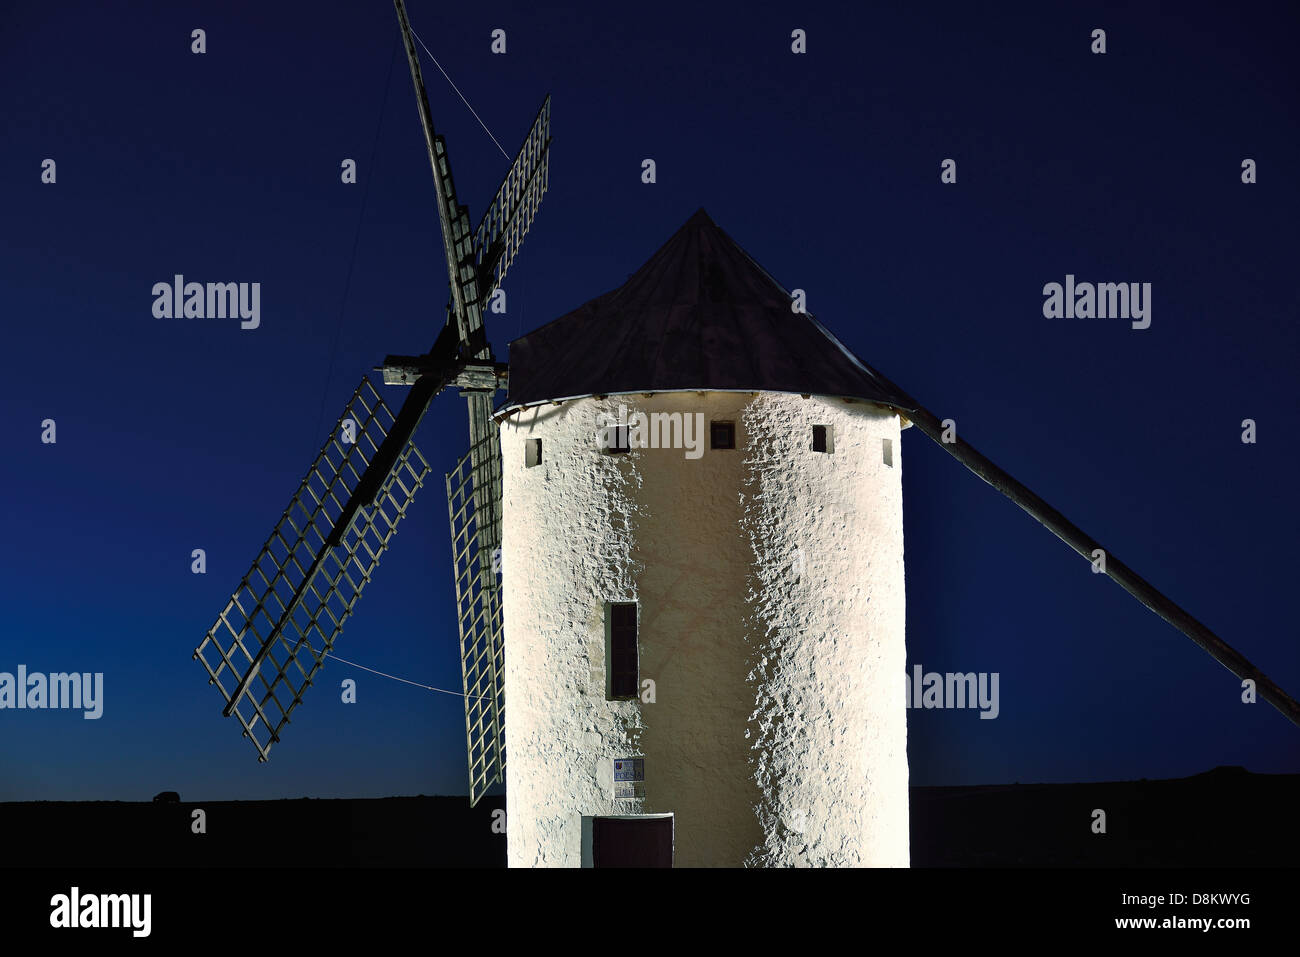 Spain, Castilla-La Mancha: Nocturnal view of windmill in Campo de Criptana Stock Photo